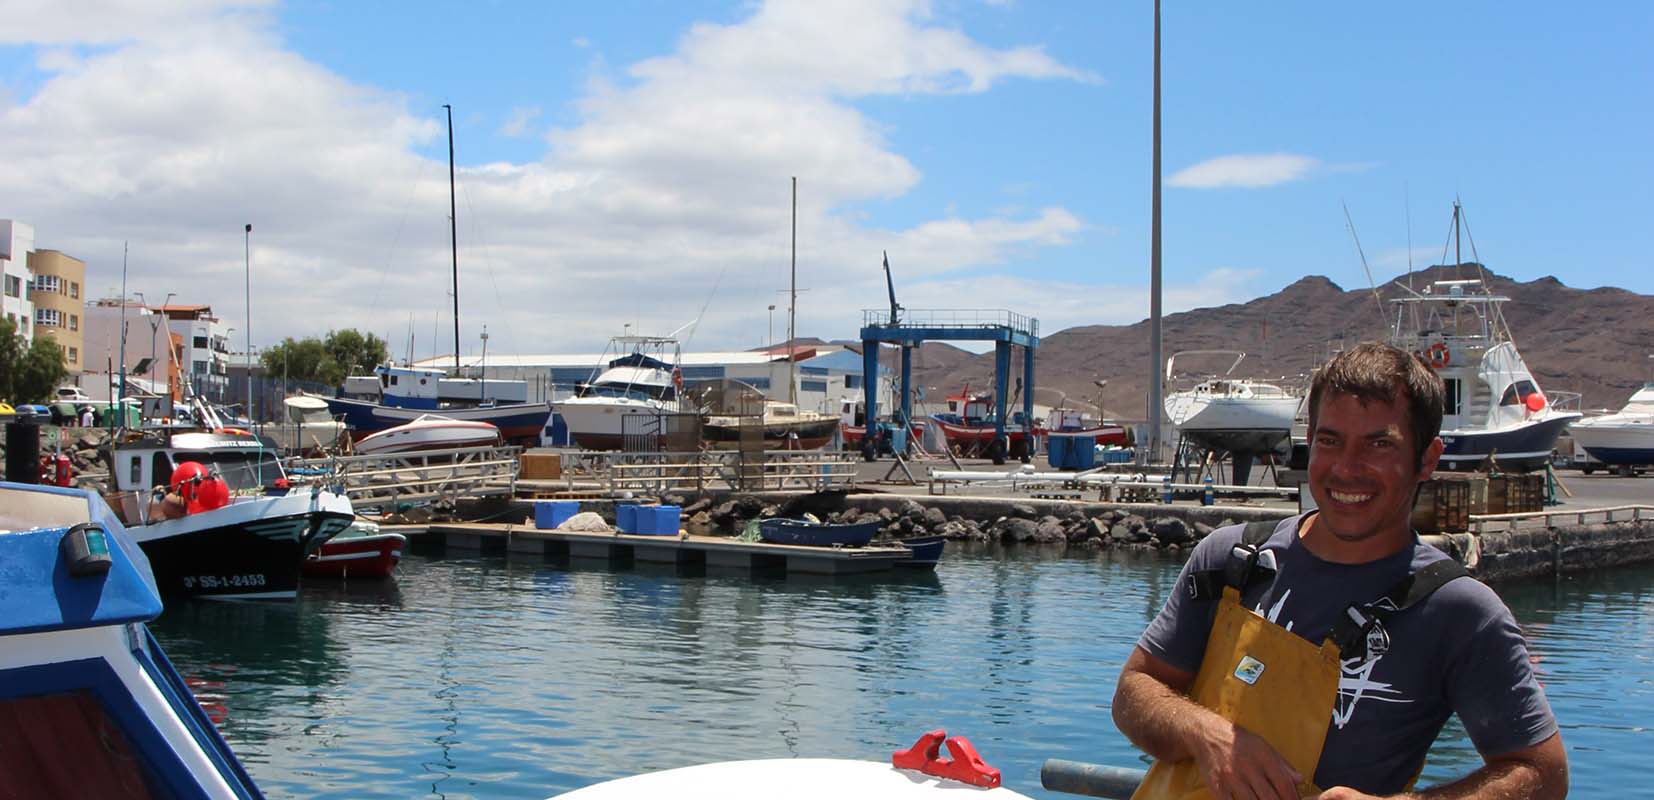   El marinero Daniel Turnes representa a las nuevas generaciones de pescadores majoreros